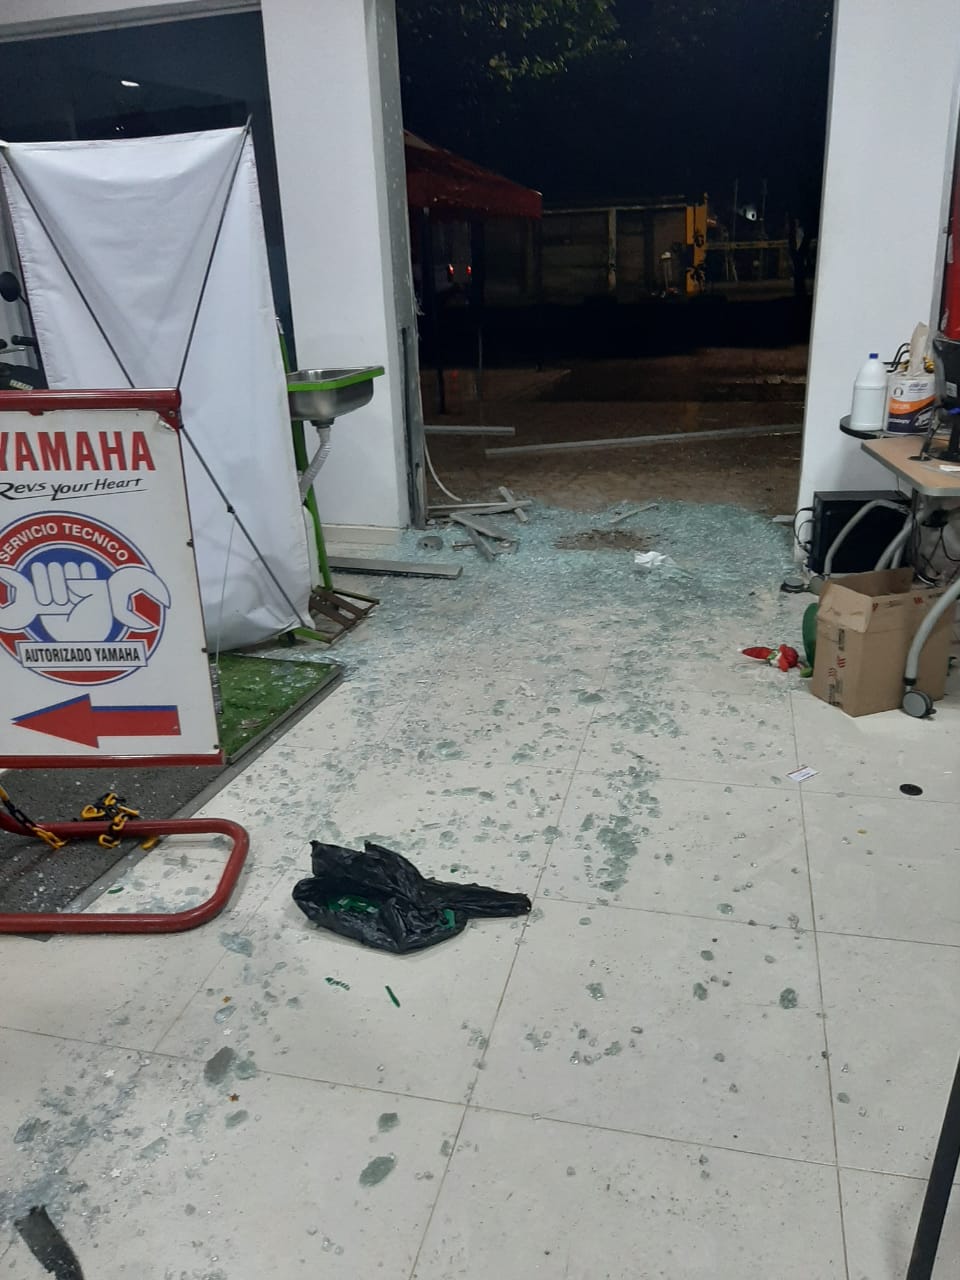 Lanzan granada contra local comercial en San José del Guaviare